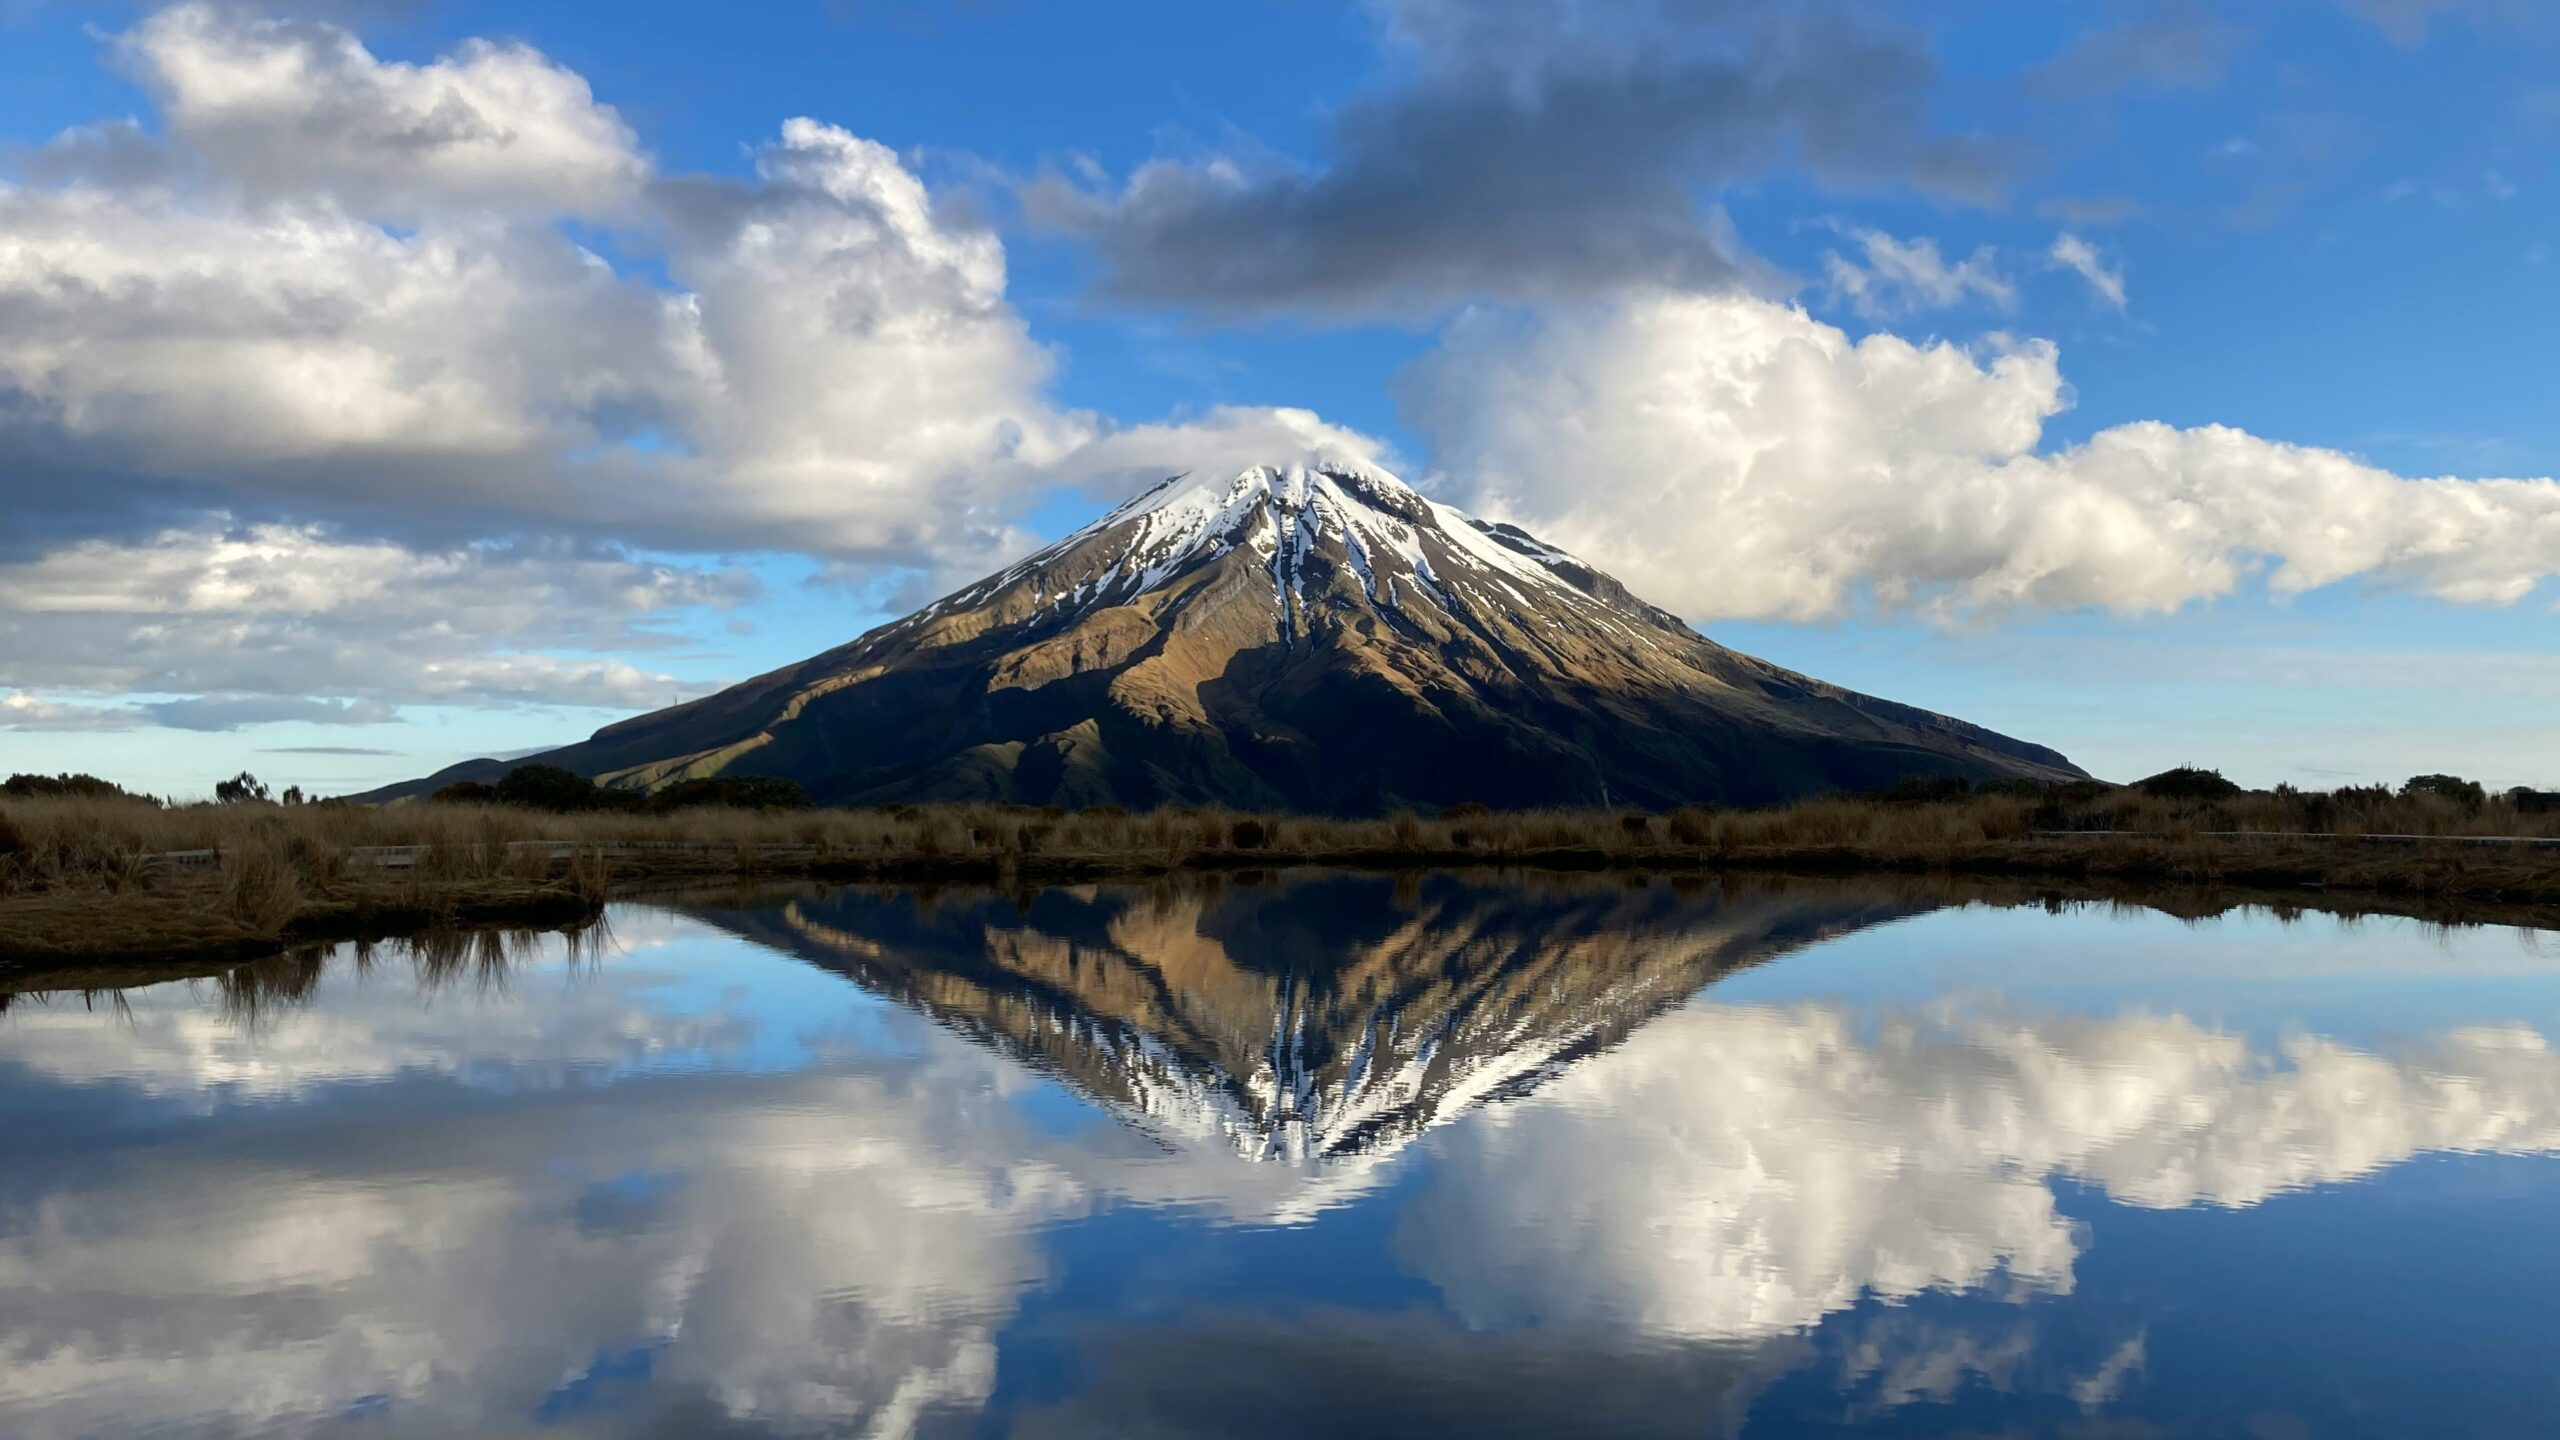 Breathtaking mountain scenery in New Zealand